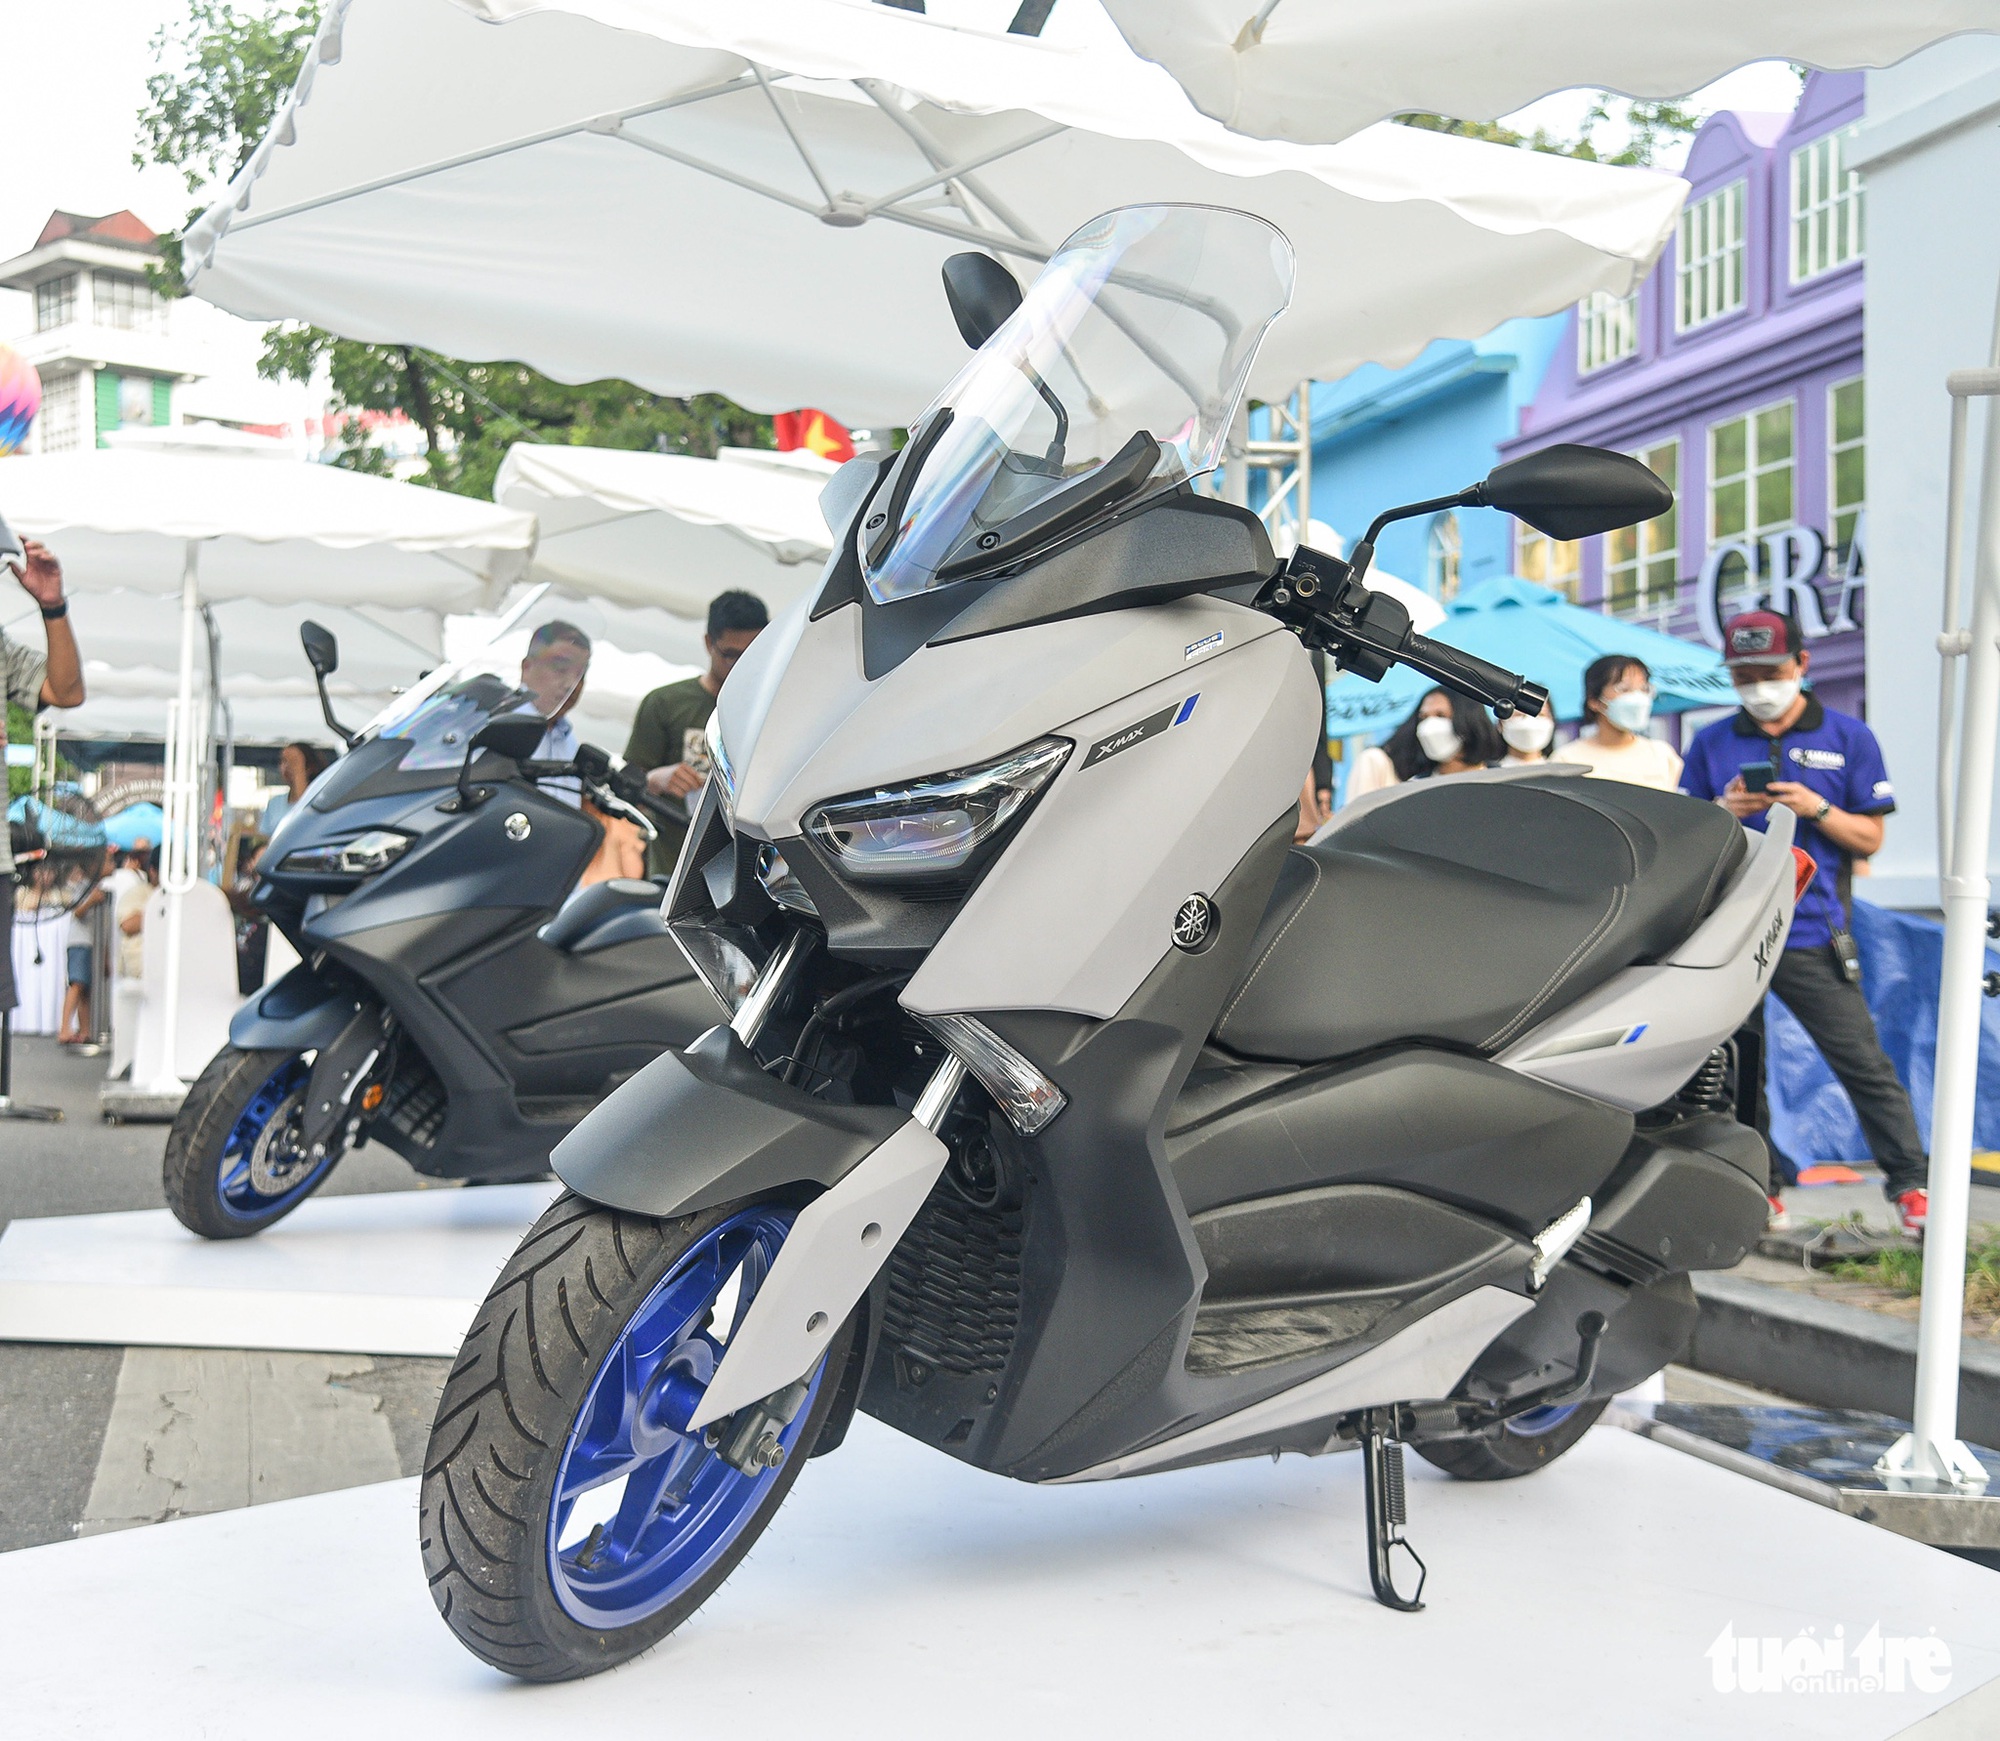 Yamaha X Max 300 nhận đặt hàng tại Việt Nam, giá từ 129 triệu đồng - Ảnh 10.